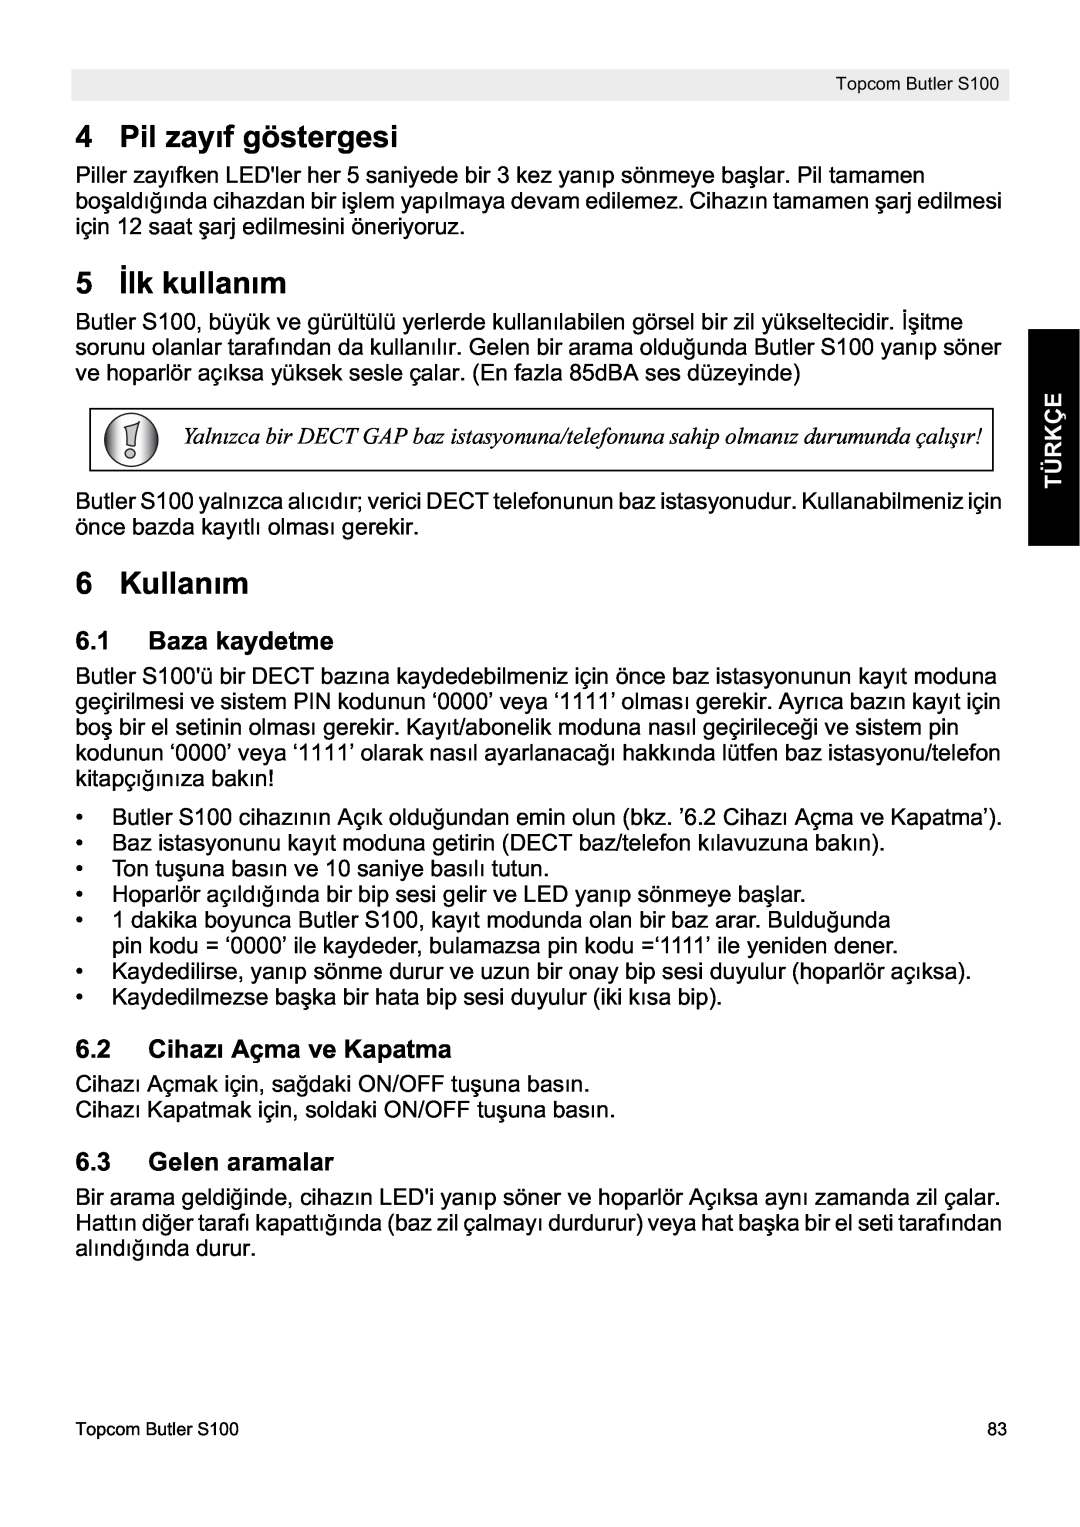 Topcom S100 Pil zayıf göstergesi, 5 ølk kullanım, Kullanım, Baza kaydetme, Cihazı Açma ve Kapatma, Gelen aramalar, Türkçe 